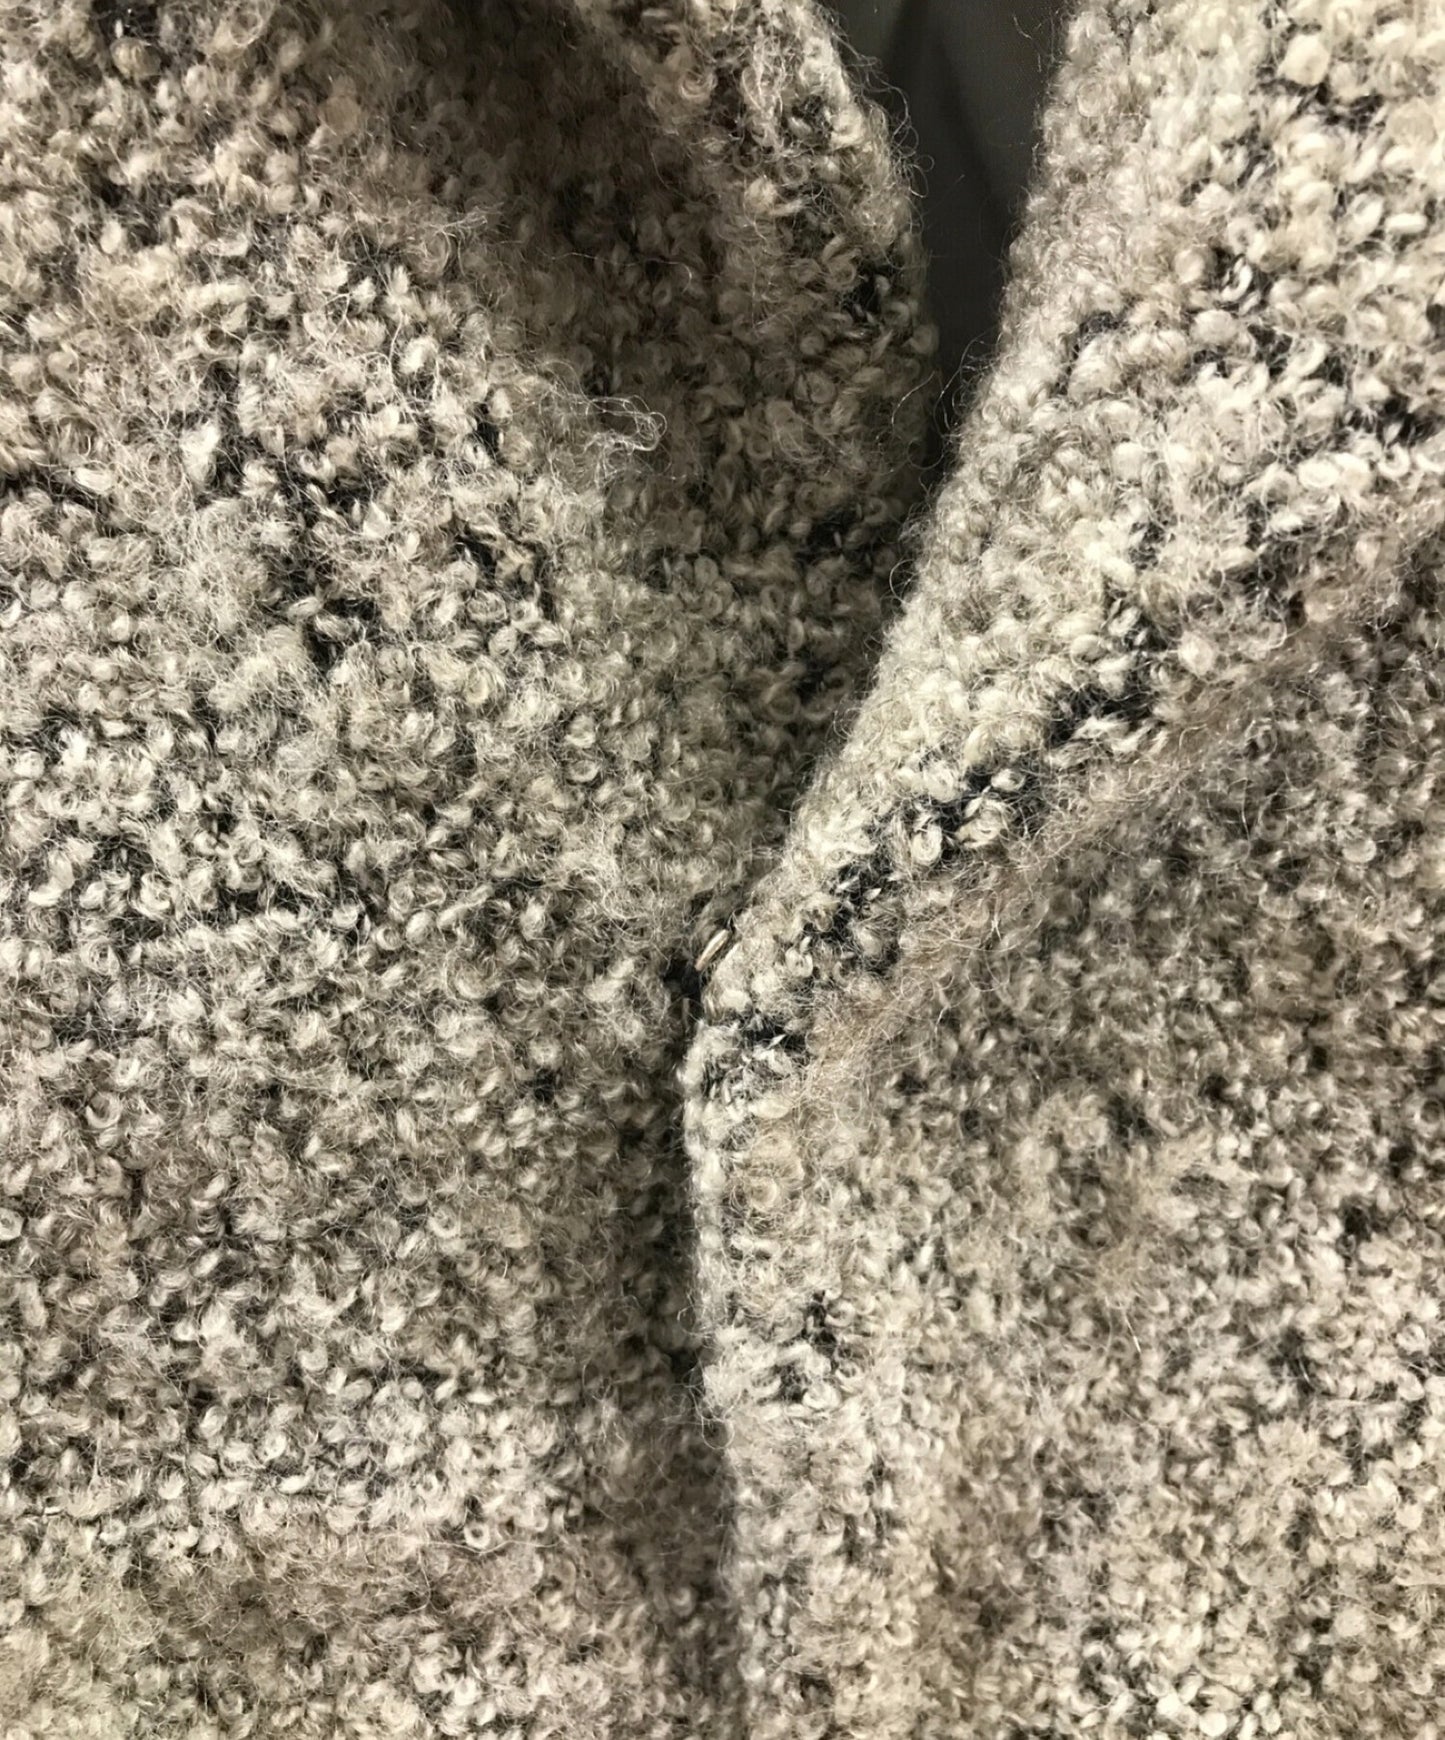 [Pre-owned] Y's wool jacket